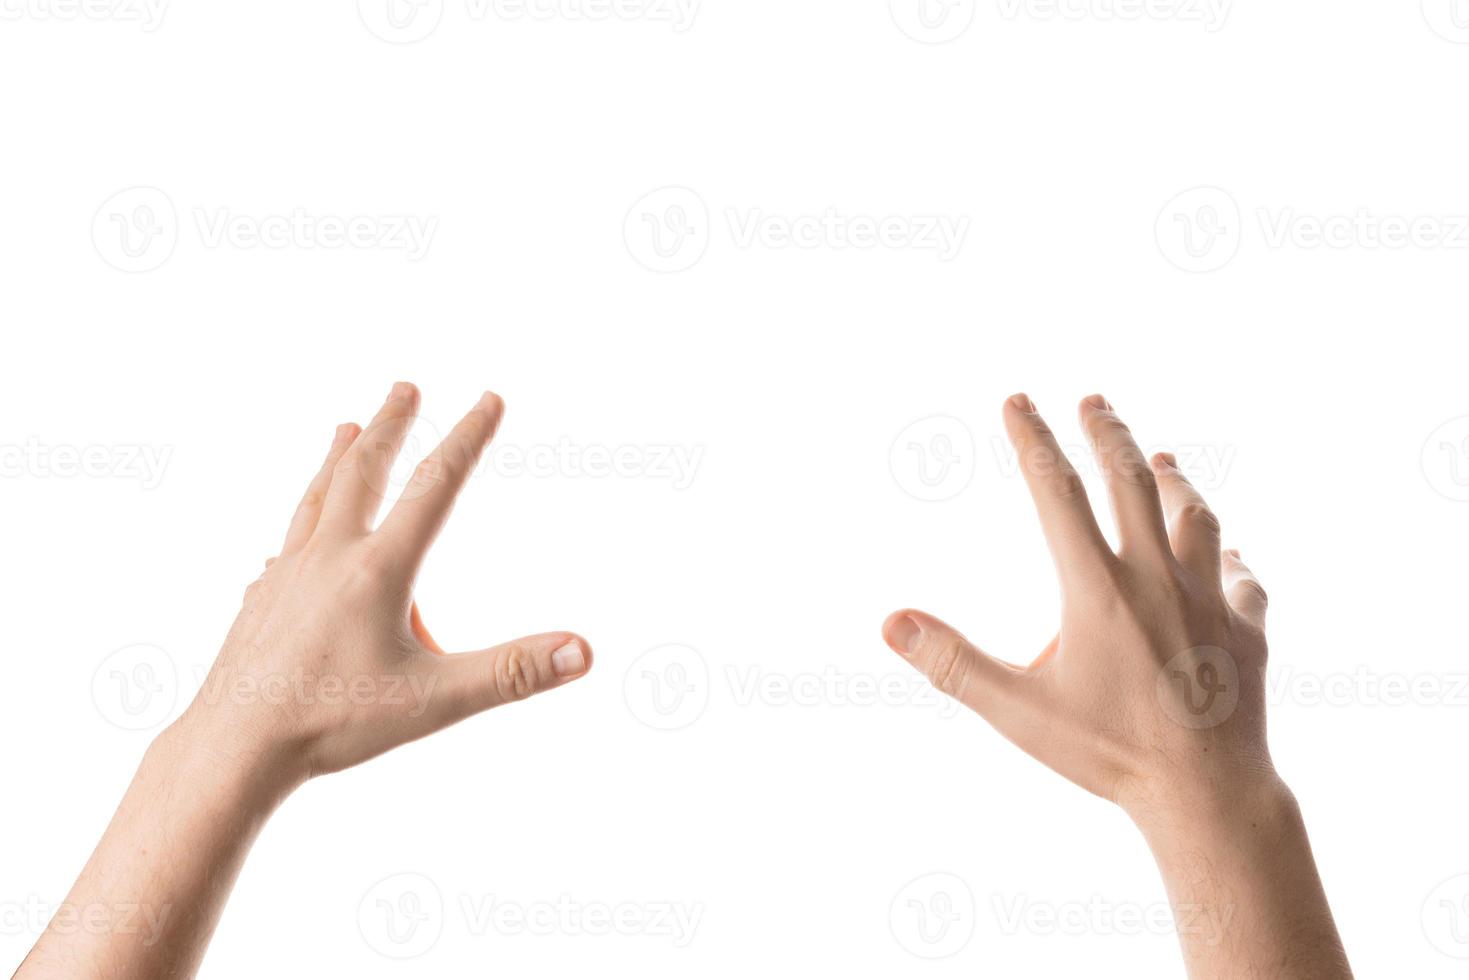 homme main tenir, saisir ou attraper un objet, geste de la main. isolé sur fond blanc. photo